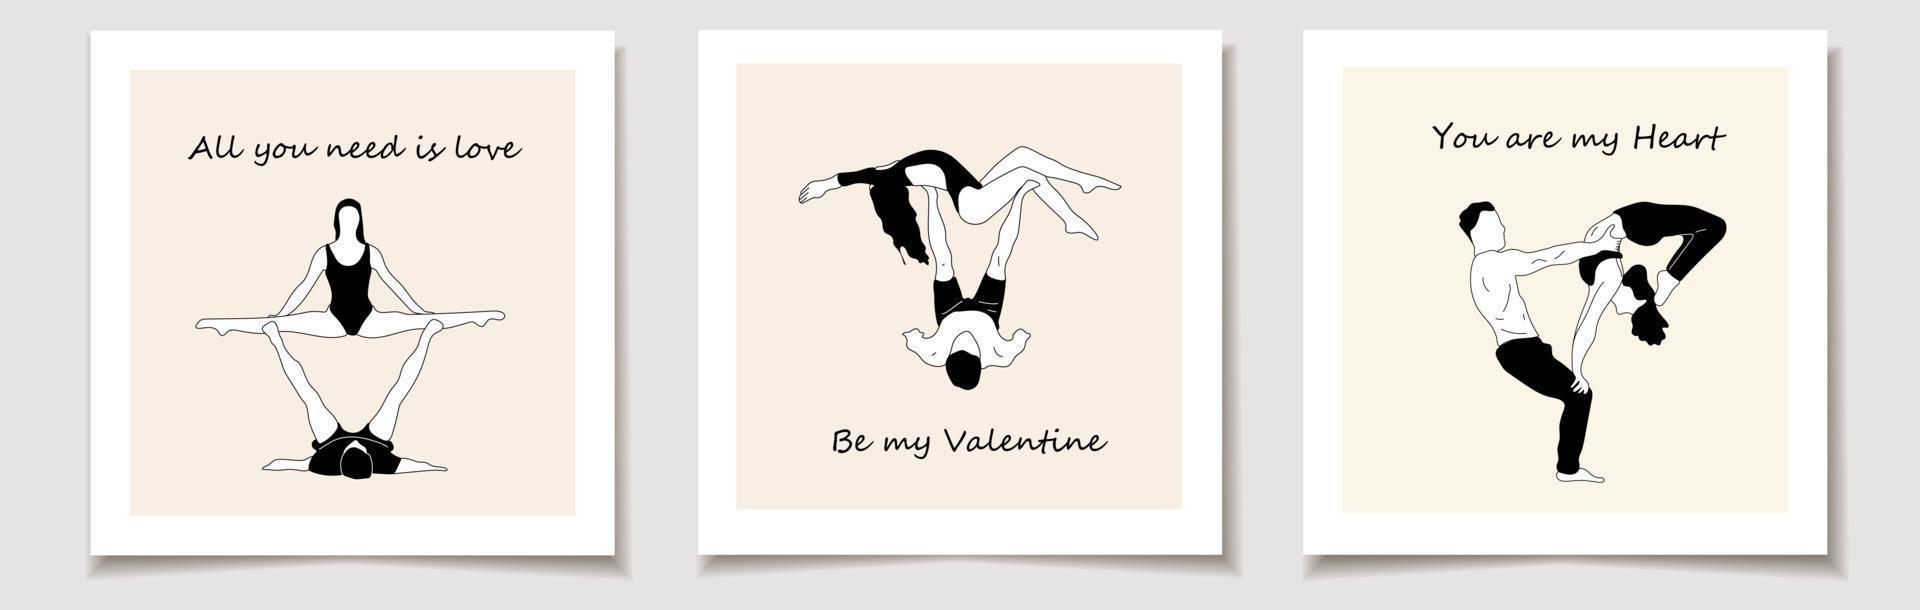 conjunto de tarjeta de san valentín con asanas de yoga para pareja yoga.boceto dibujado a mano vector